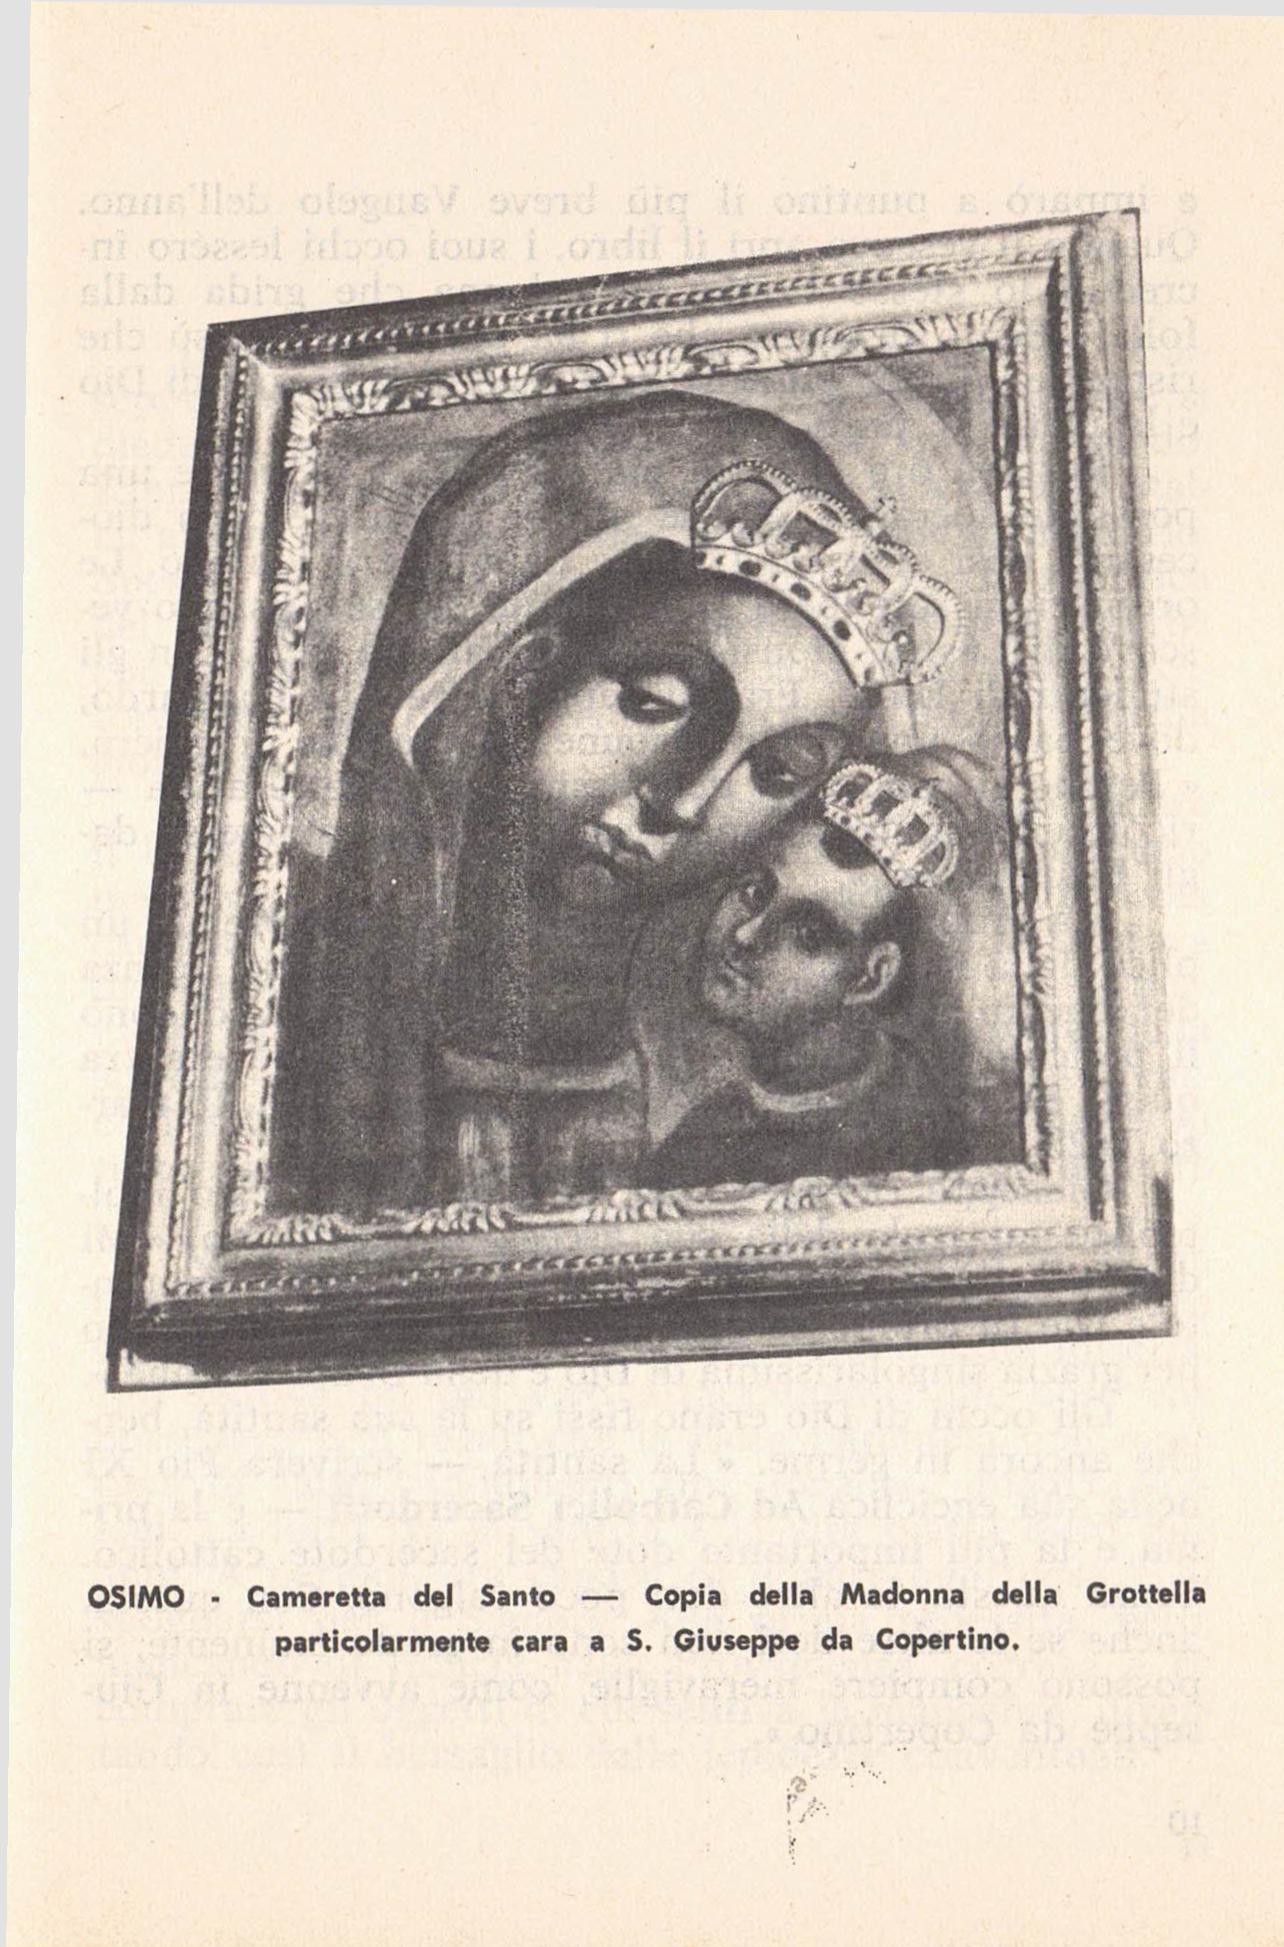 San Giuseppe da Copertino